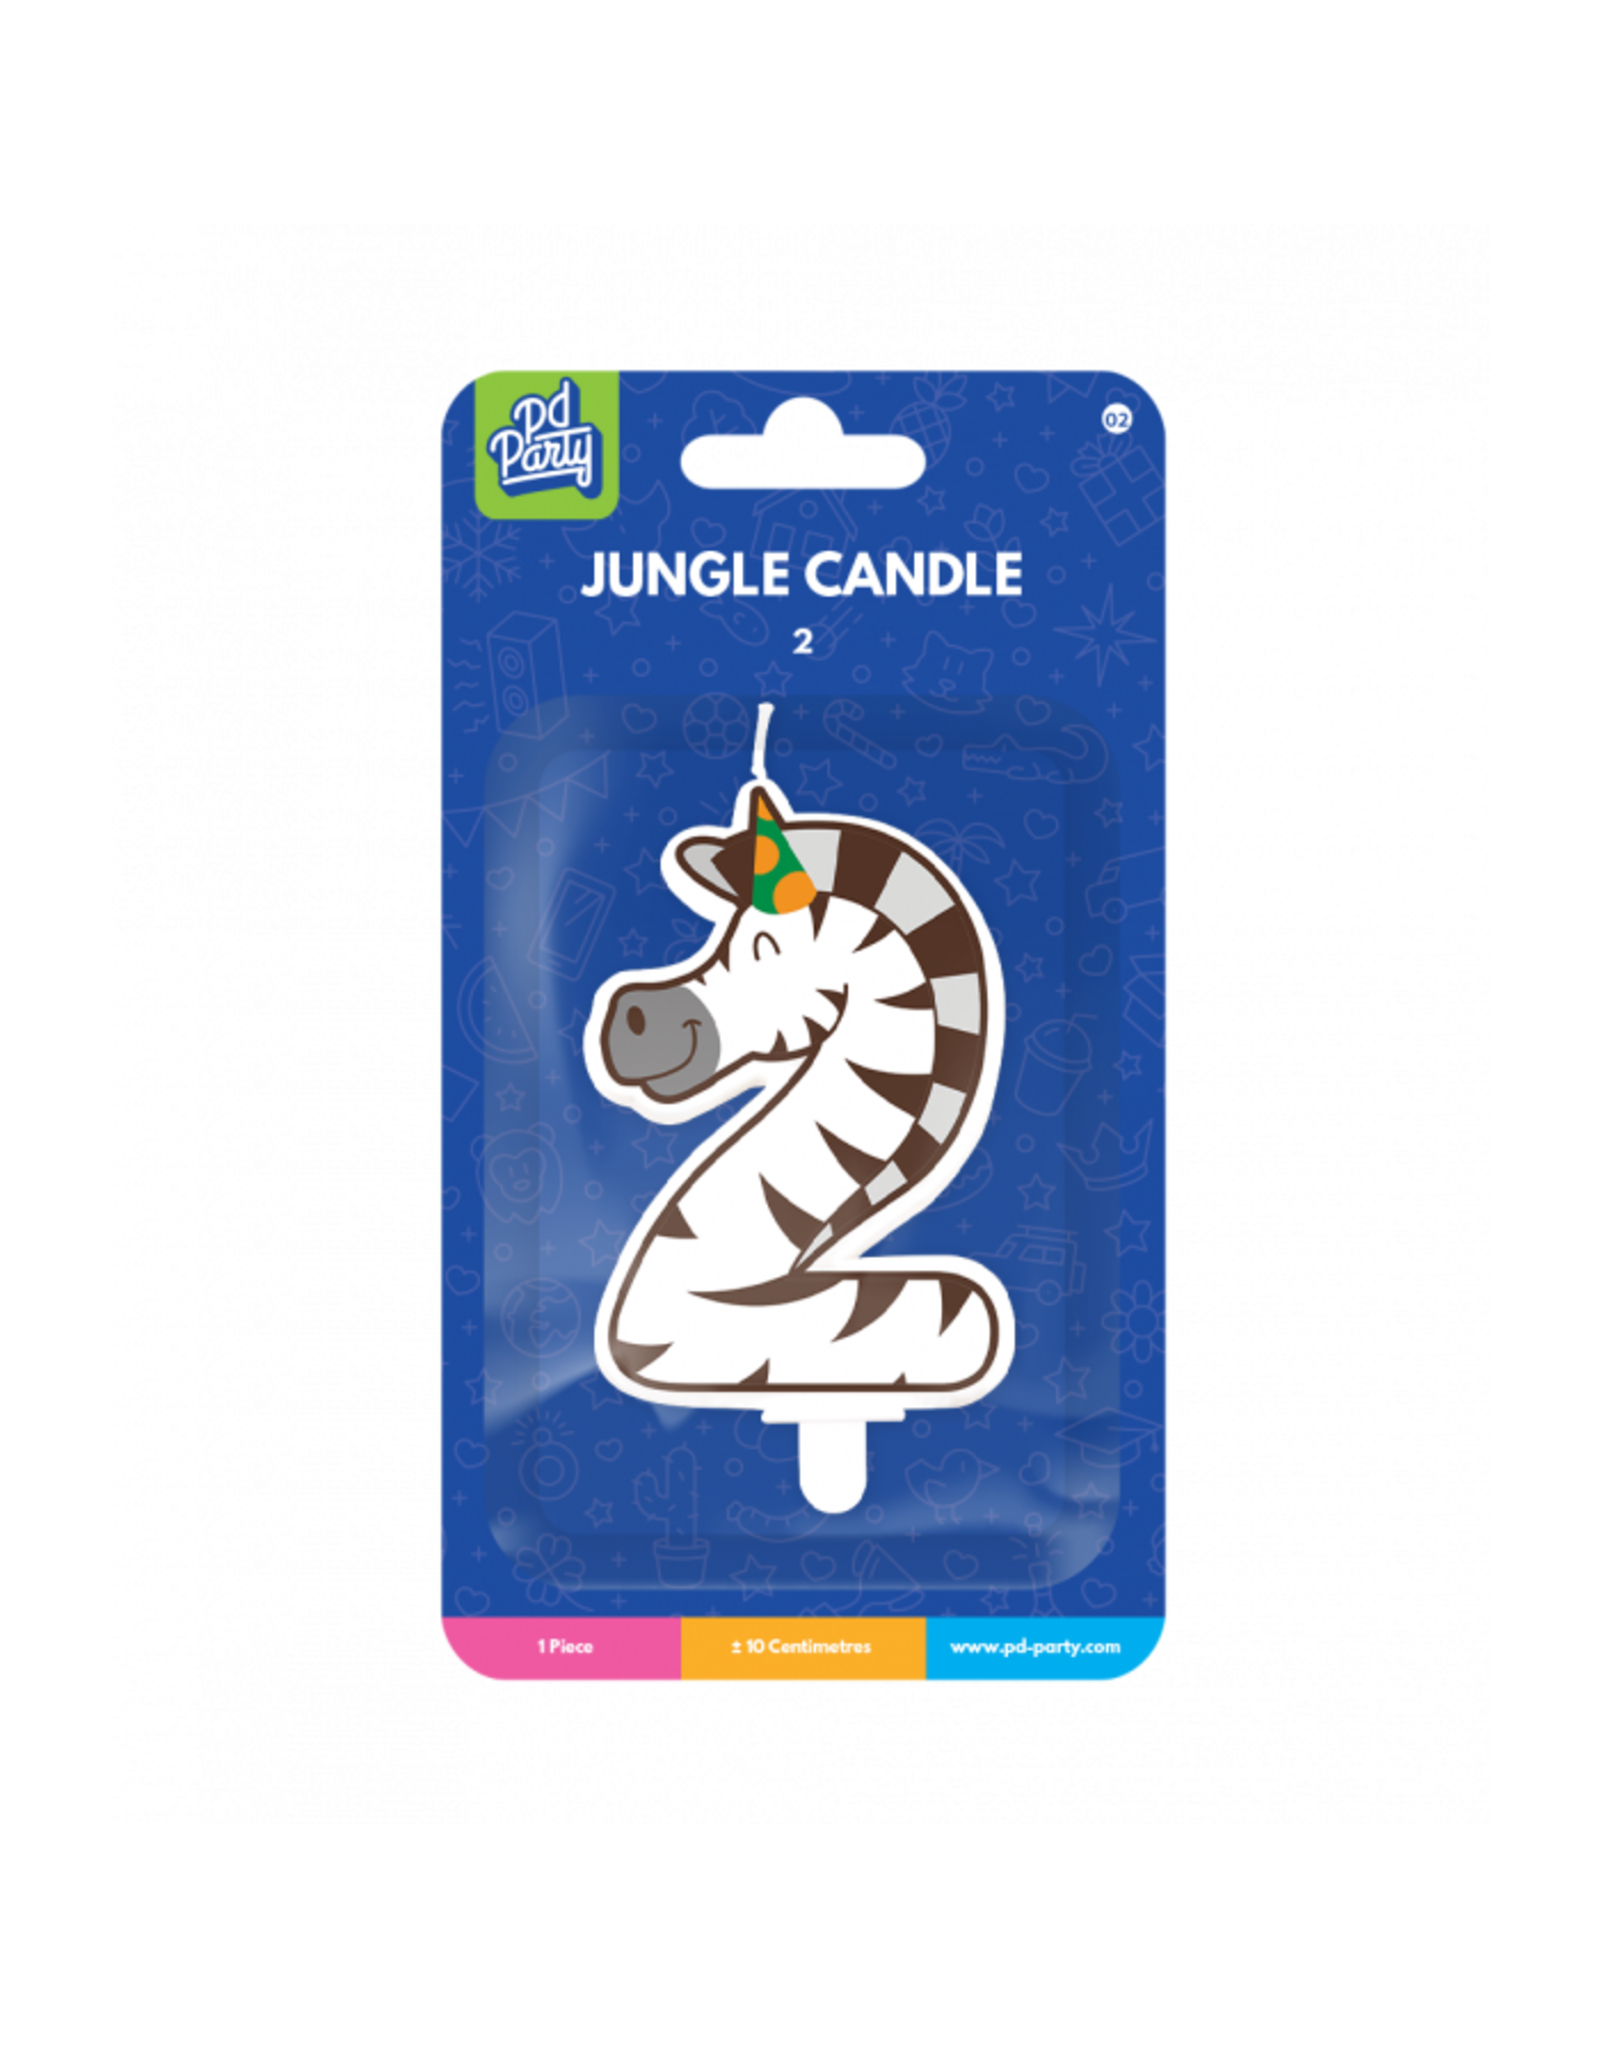 Jungle Candle - 2 Zebra